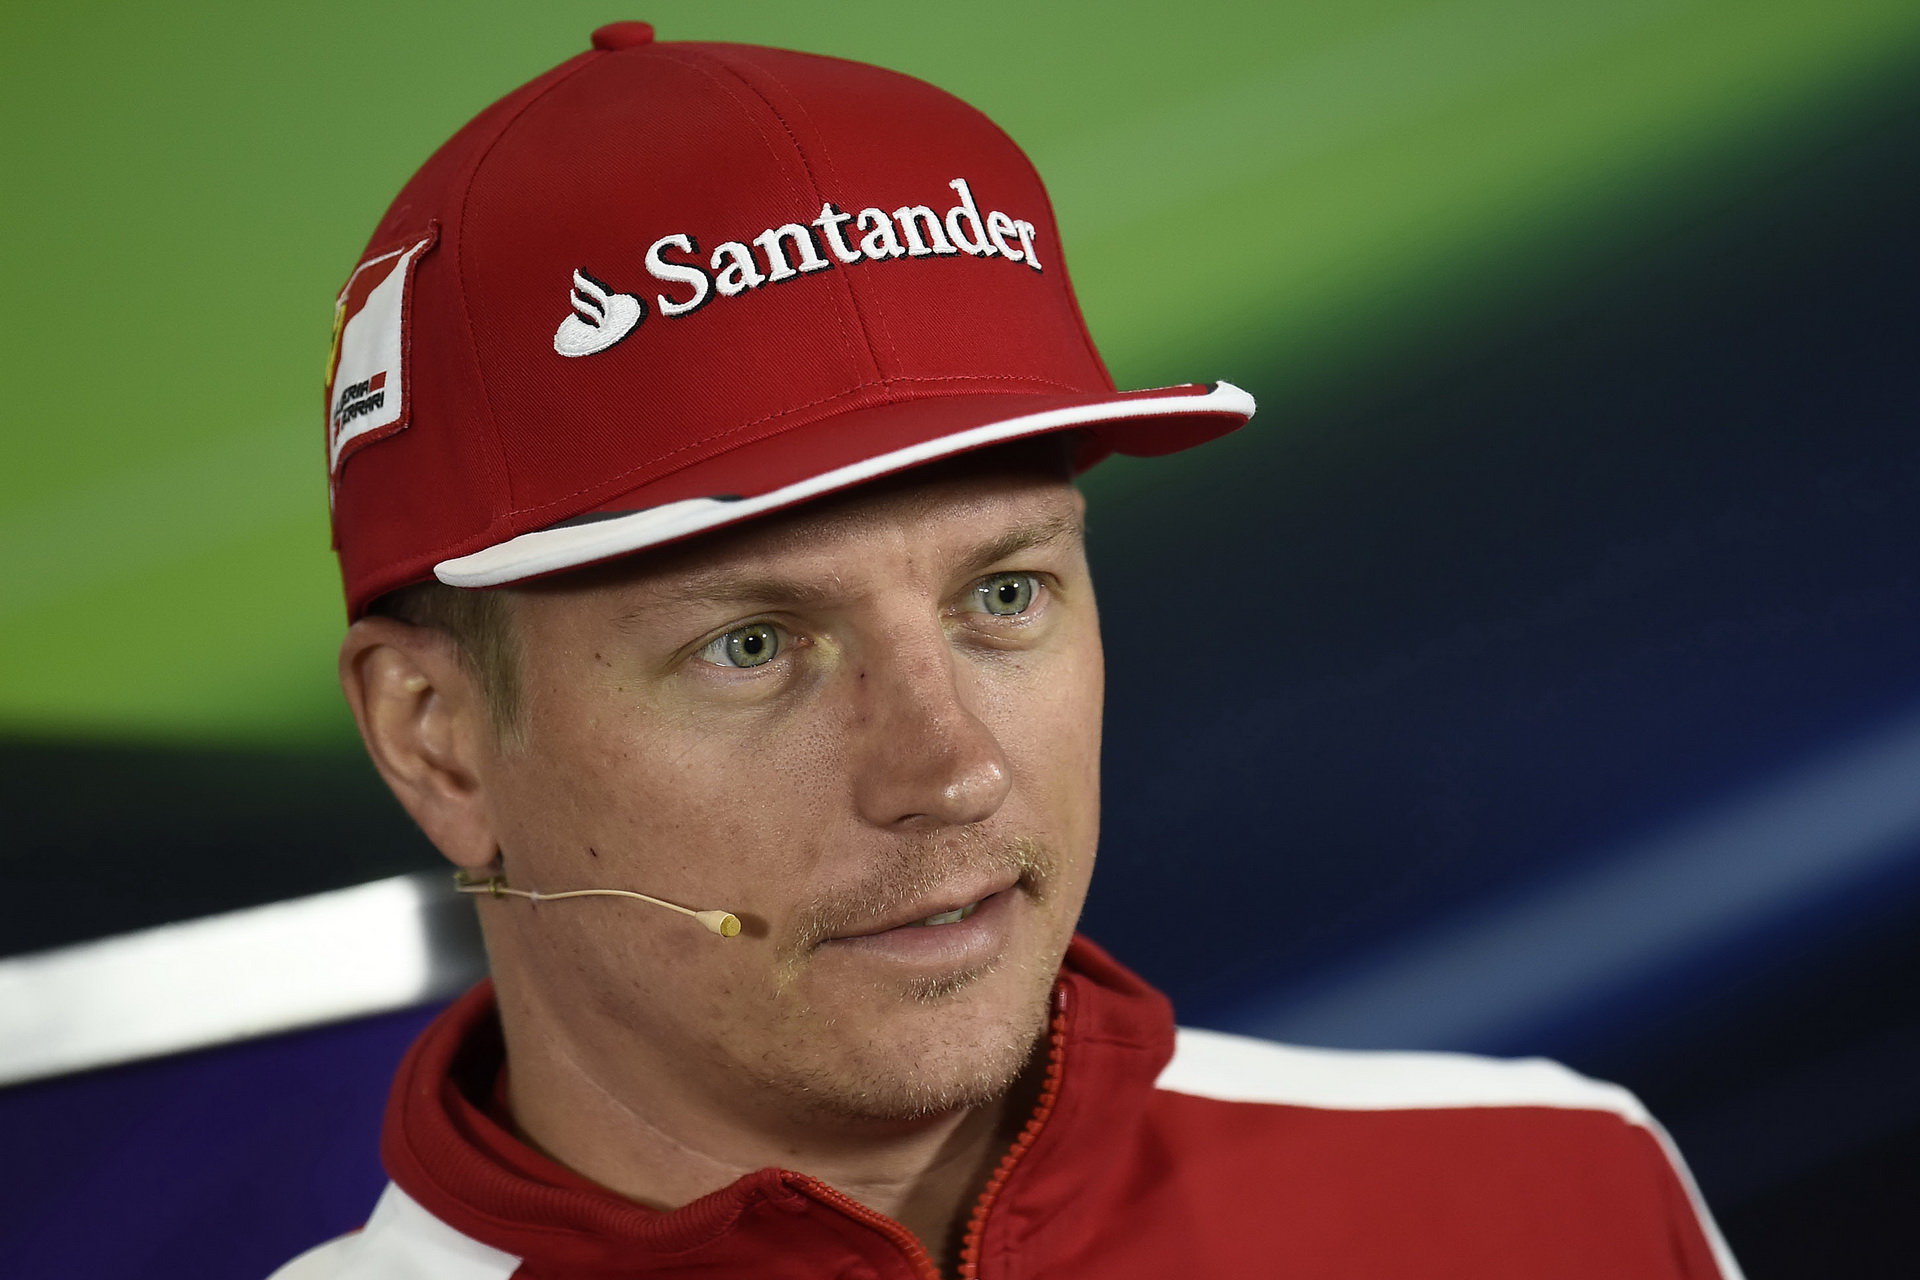 Räikkönen se stal po podpisu smlouvy na rok 2016 oblíbeným tématem